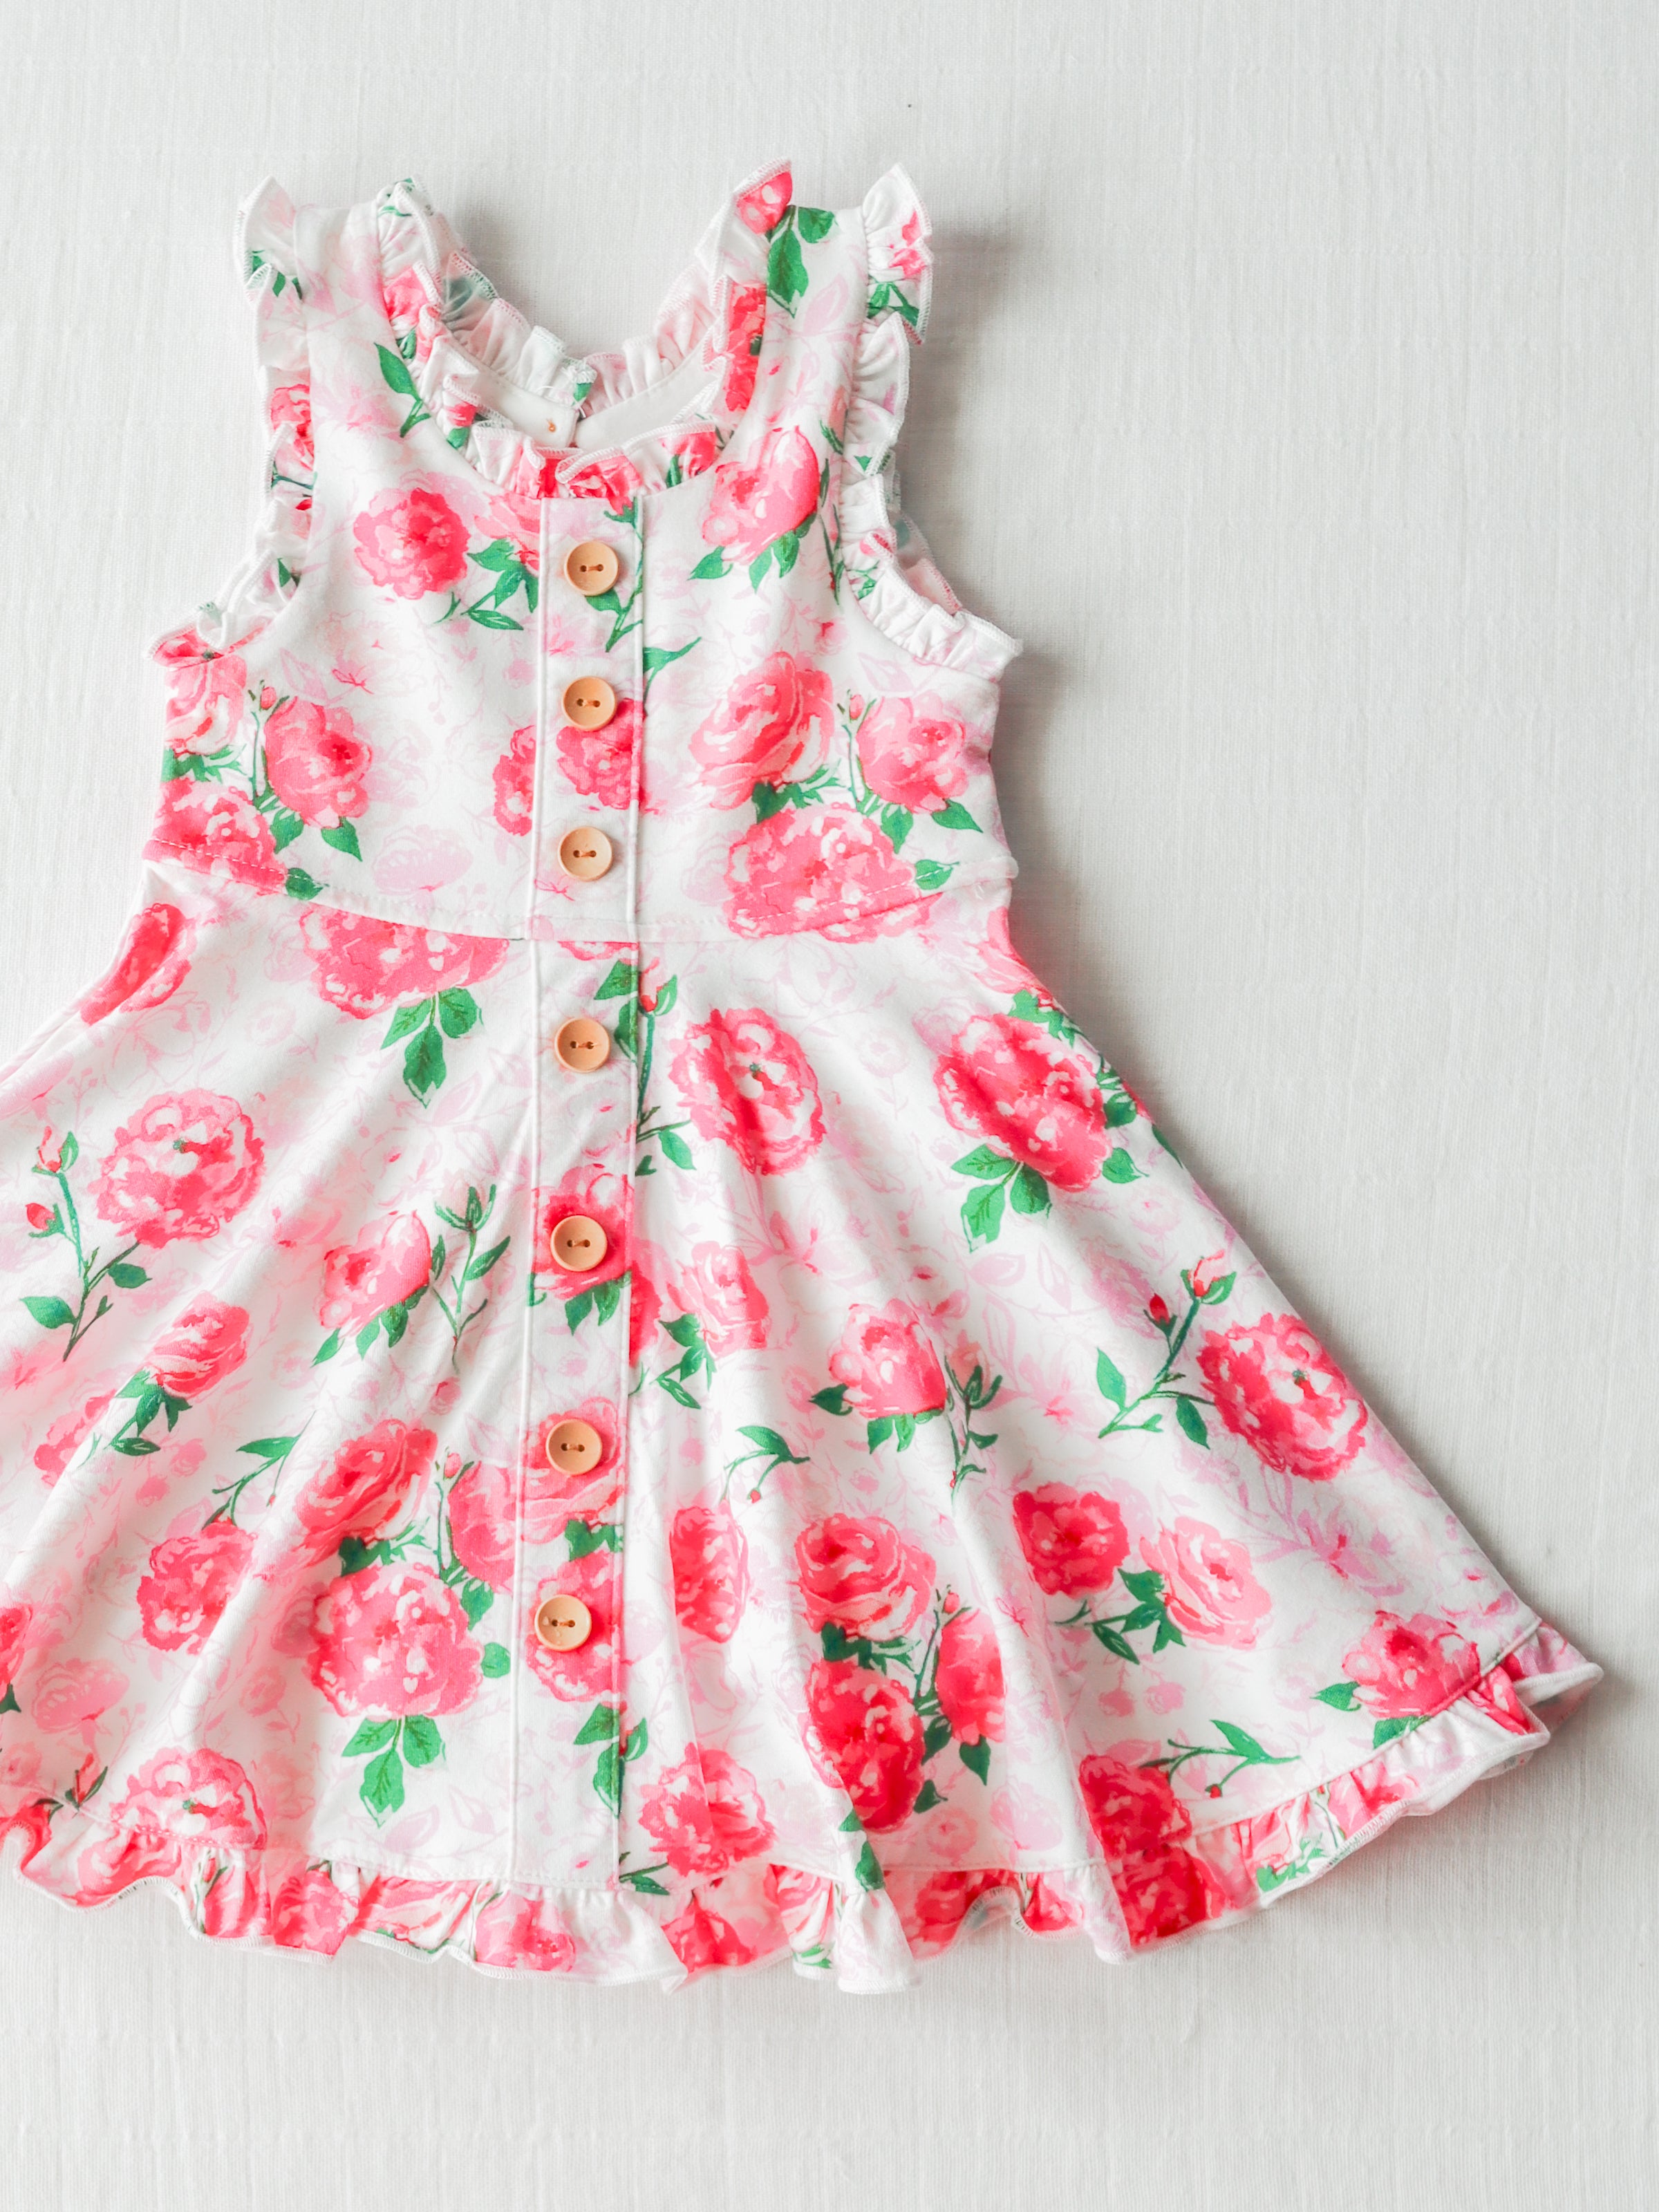 Ruffled Trim Dress - Raspberry Roses - SweetHoney Clothing